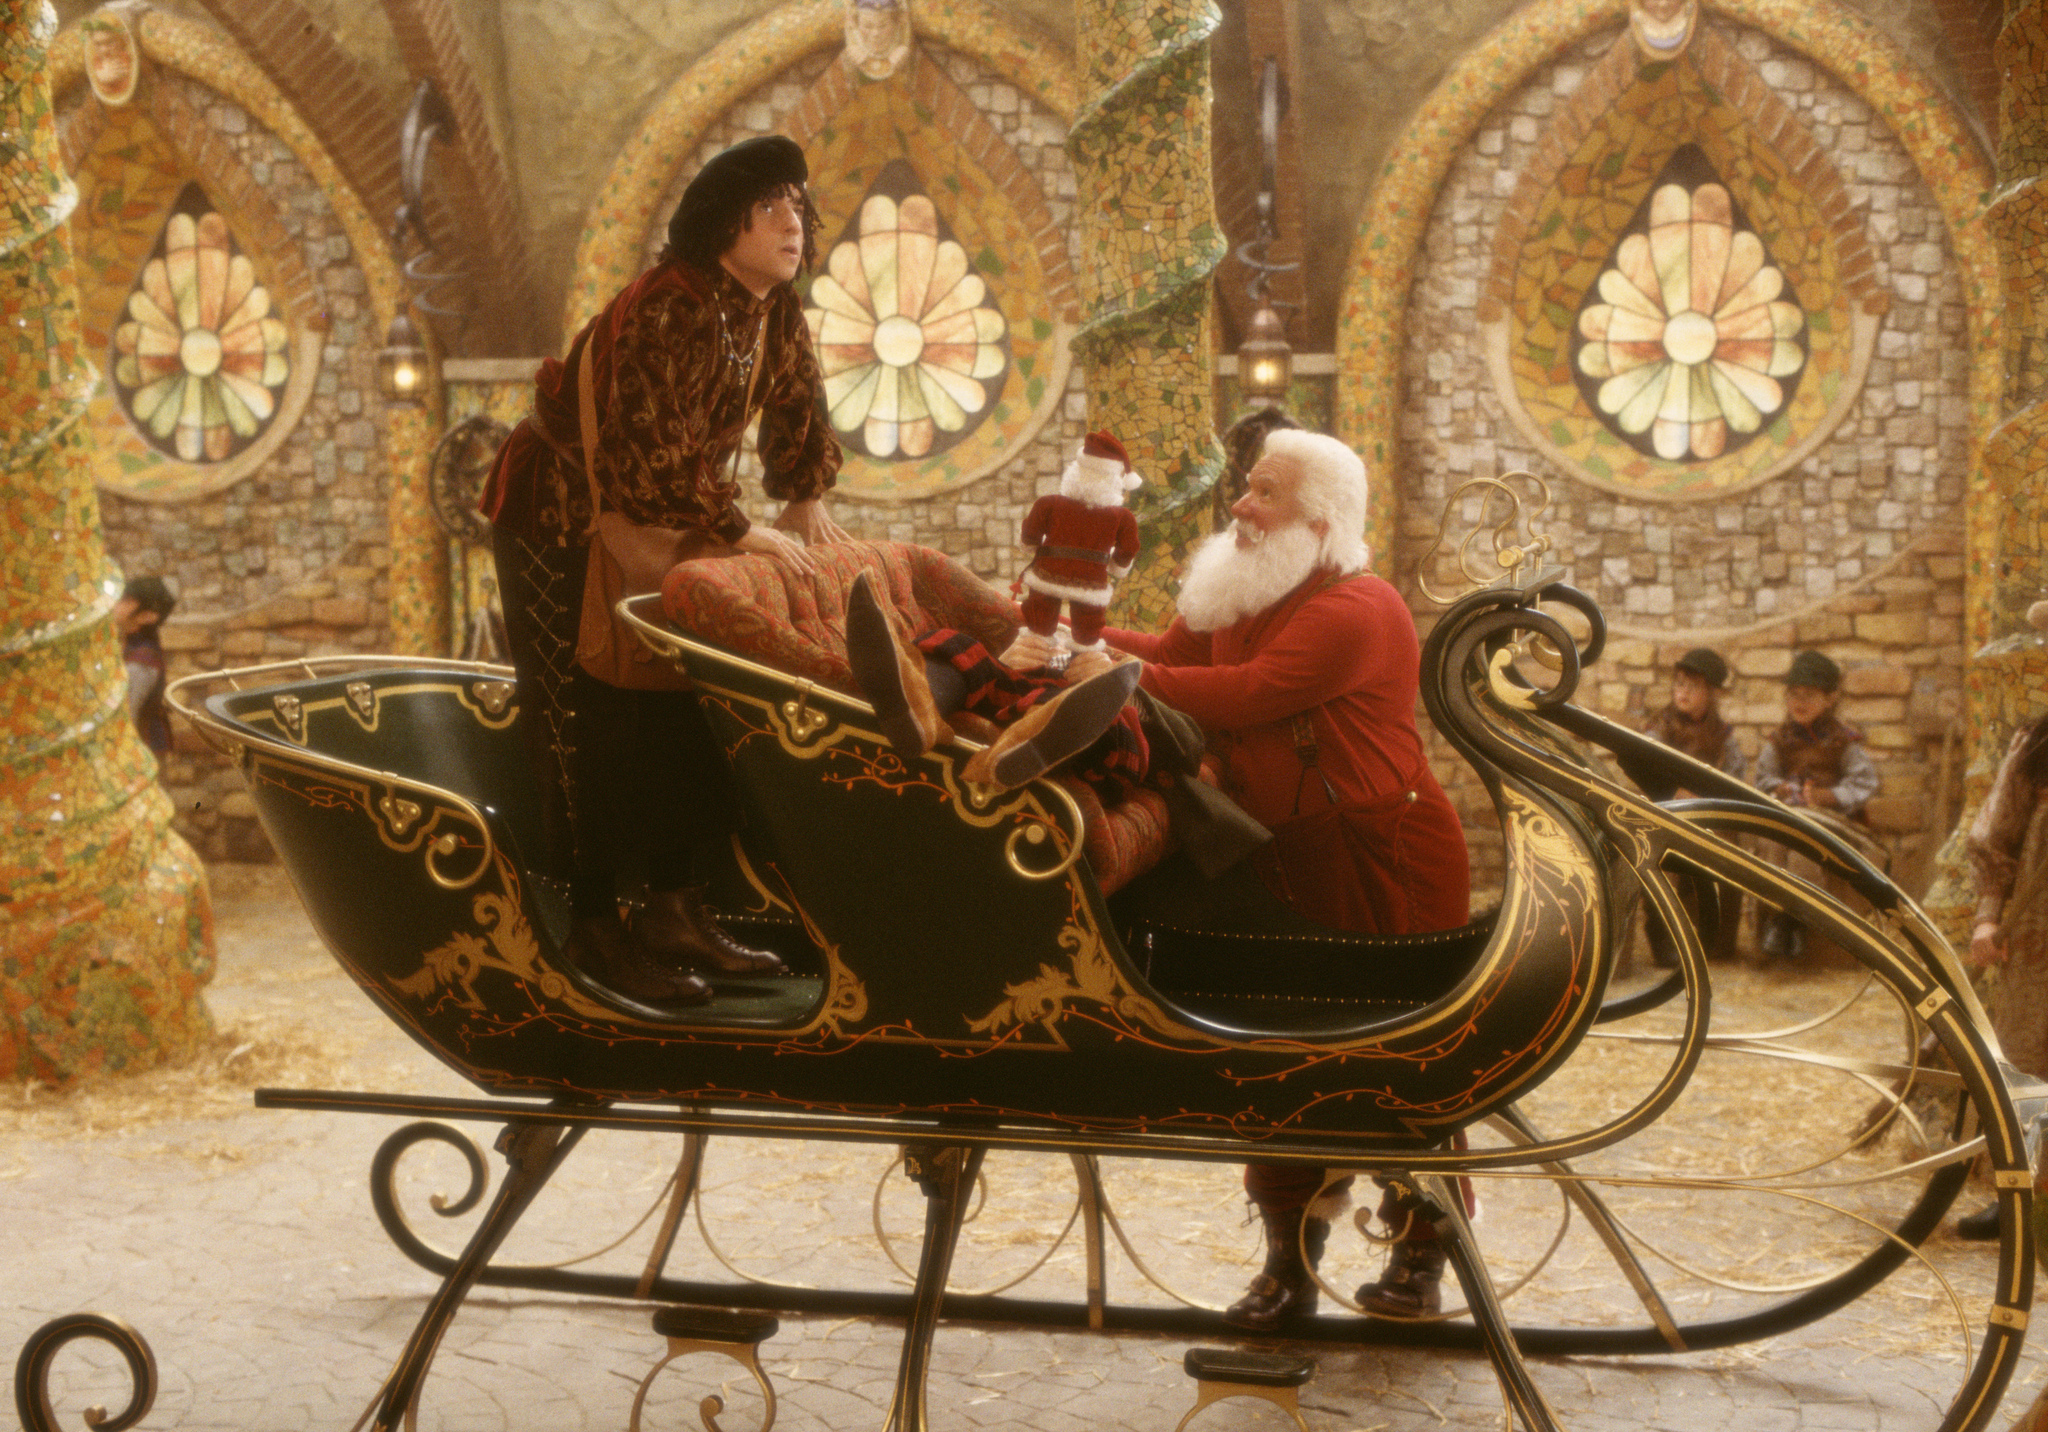 Still of Tim Allen and David Krumholtz in The Santa Clause 2 (2002)